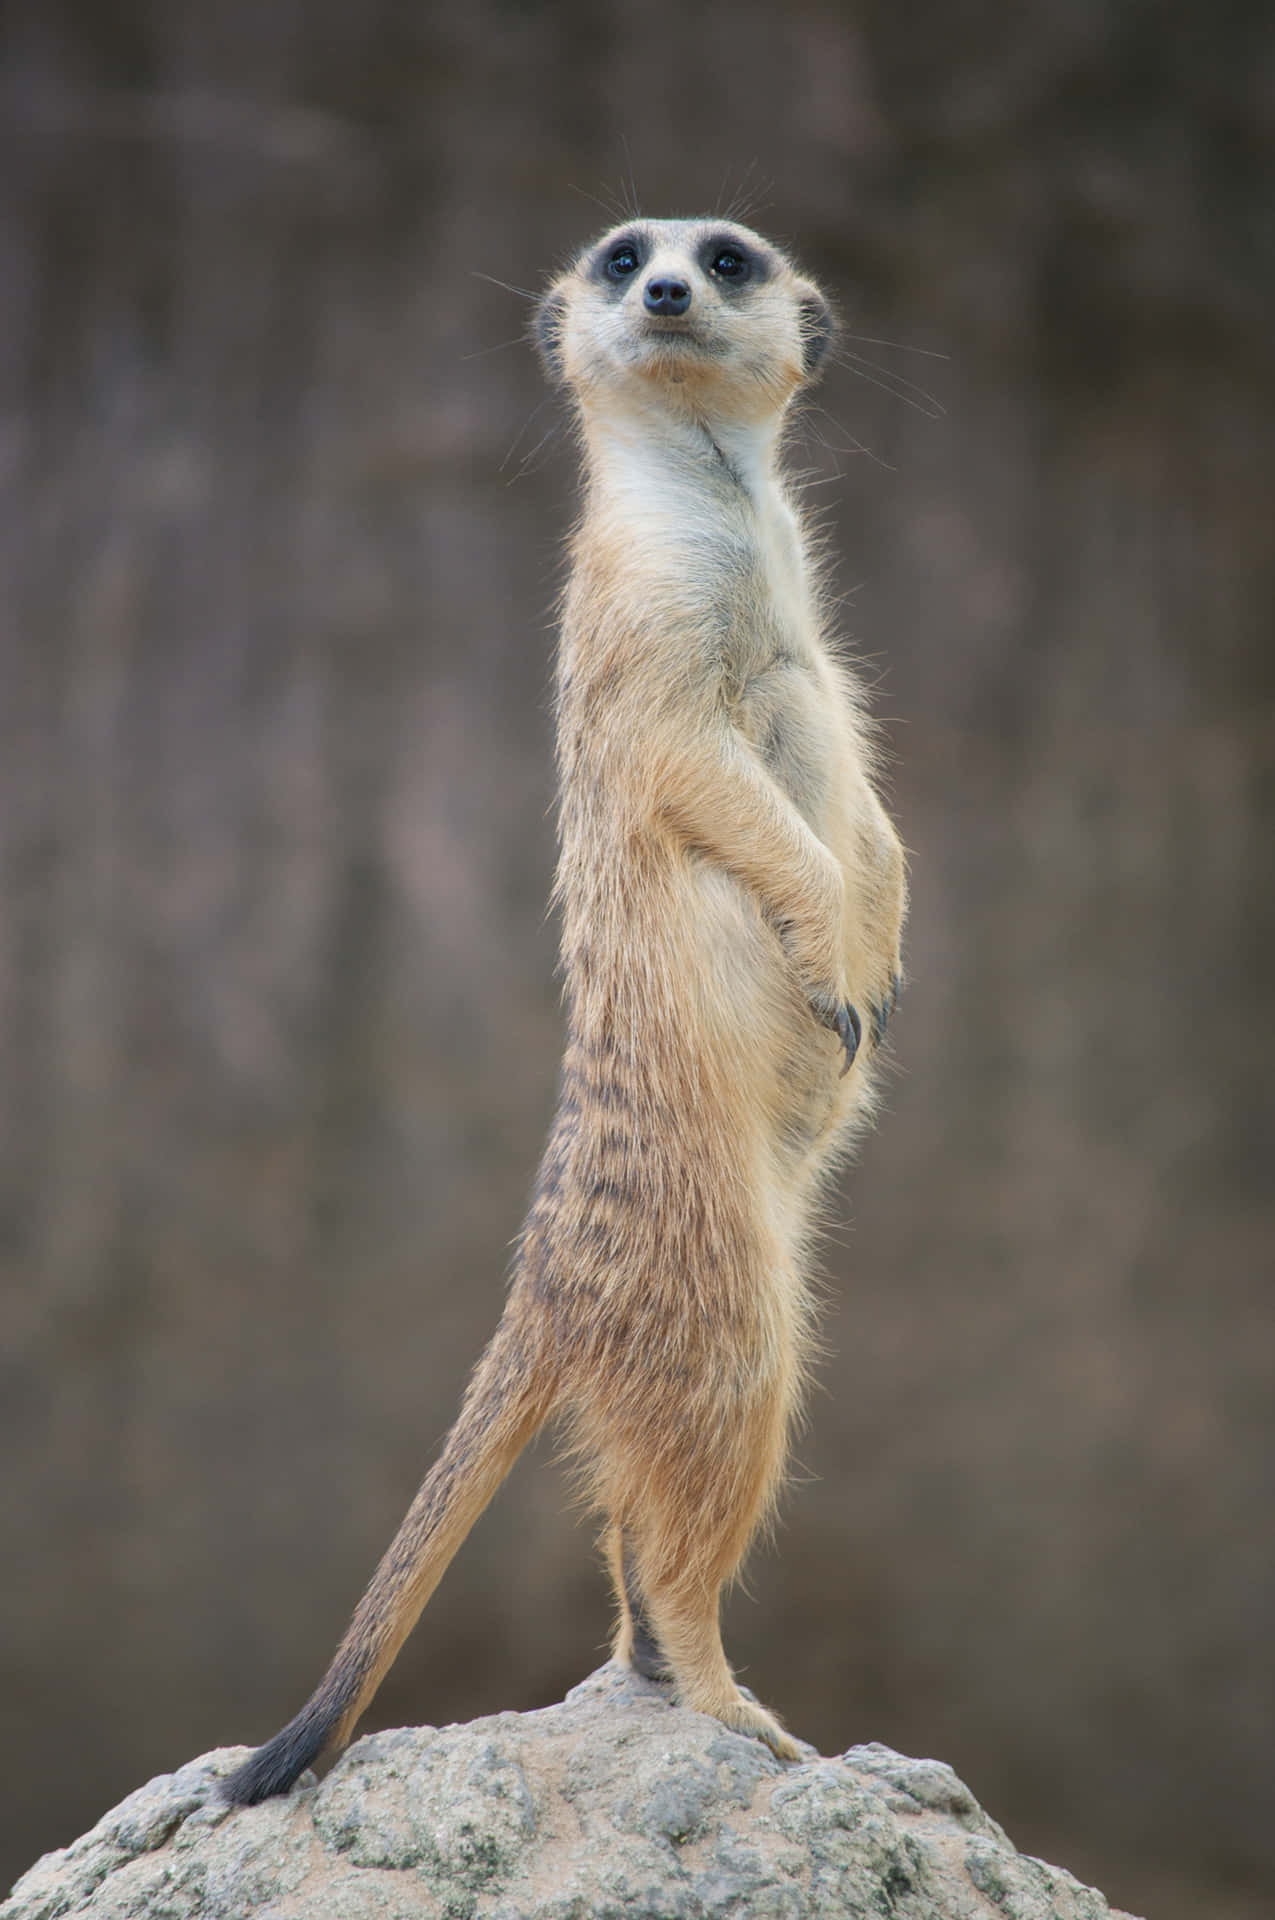 a meerkat standing on a rock